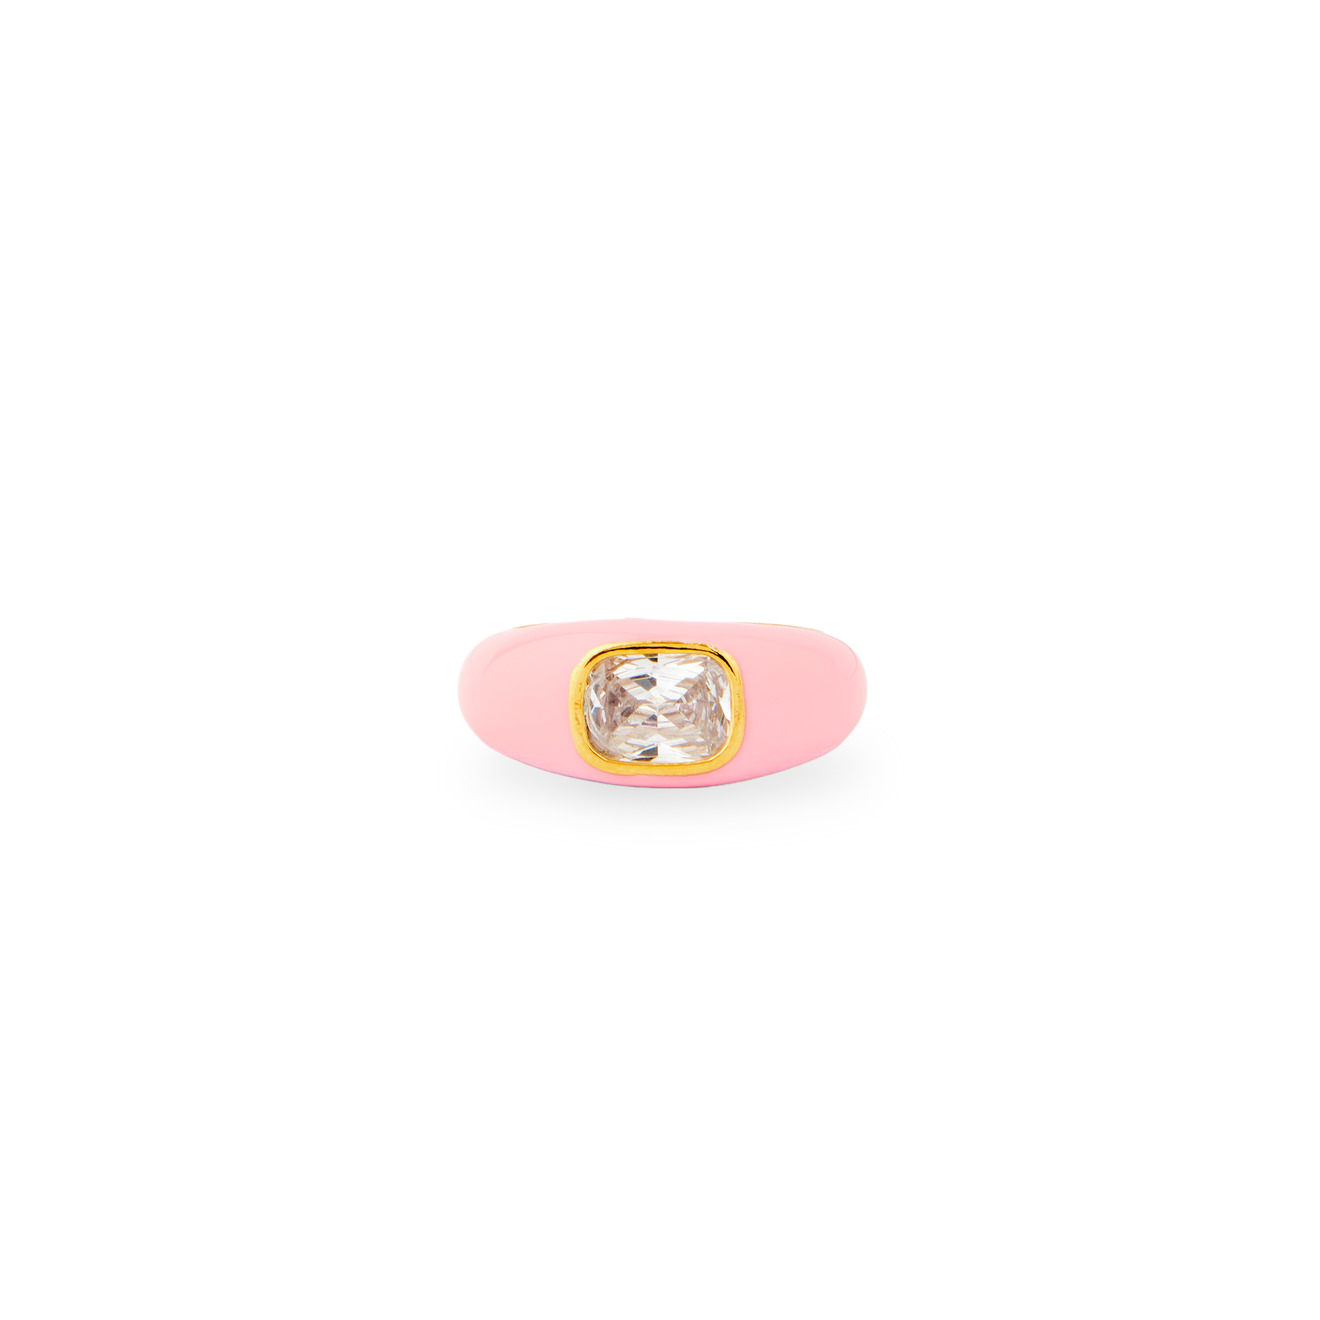 Herald Percy Кольцо с розовой эмалью и кристаллом herald percy золотистое кольцо с овальным кристаллом